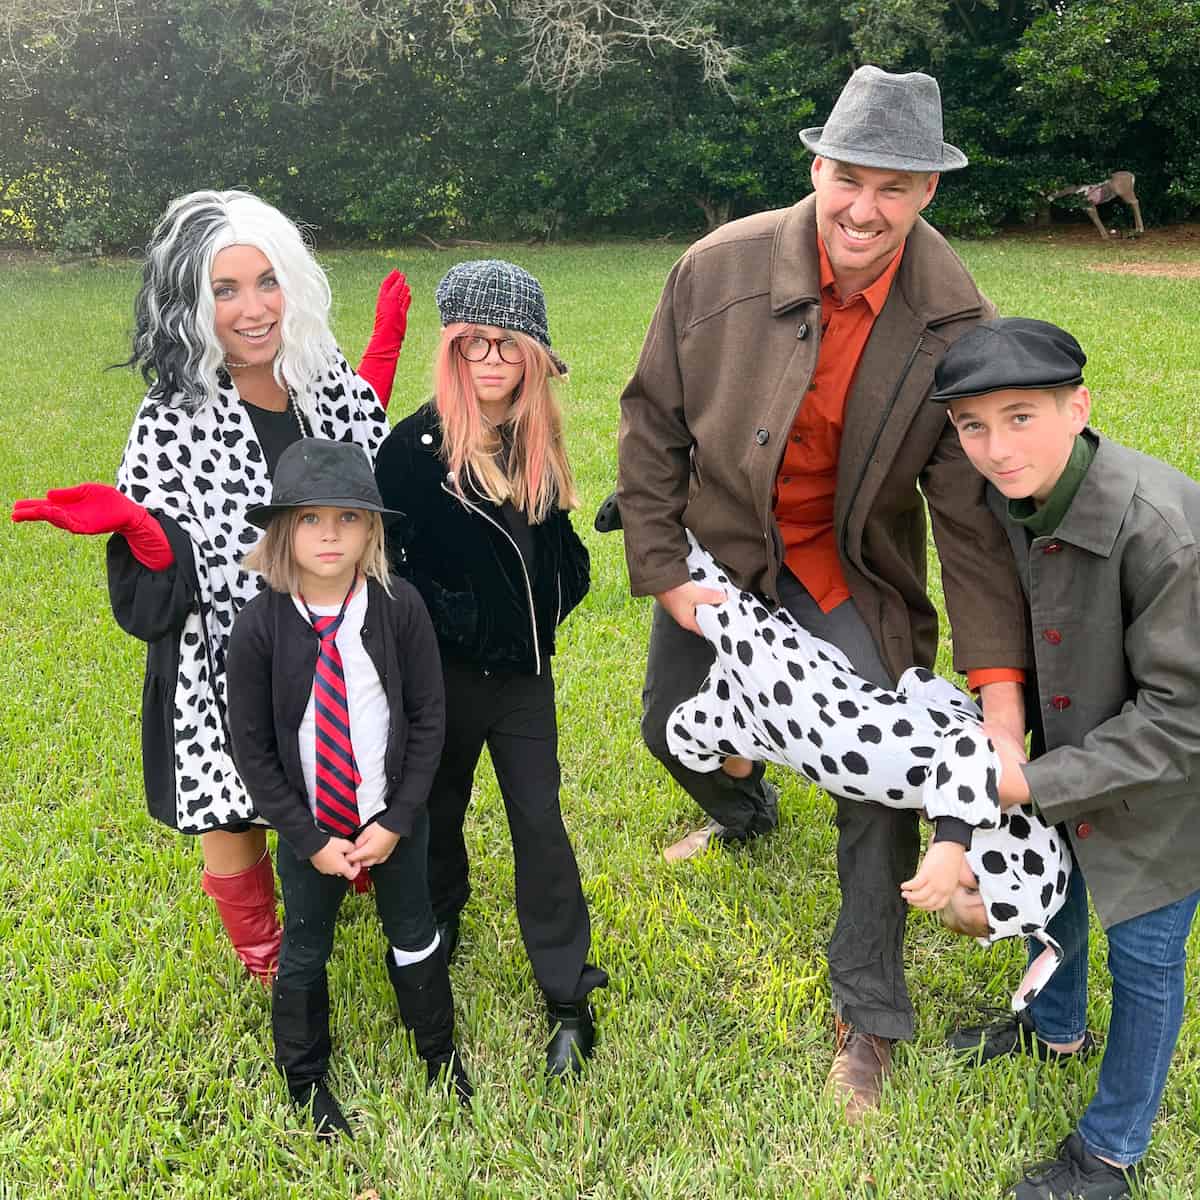 Cruella Family Costume Ideas for Halloween - an easy, DIY 101 Dalmatians family costume with a Cruella De Vil twist!